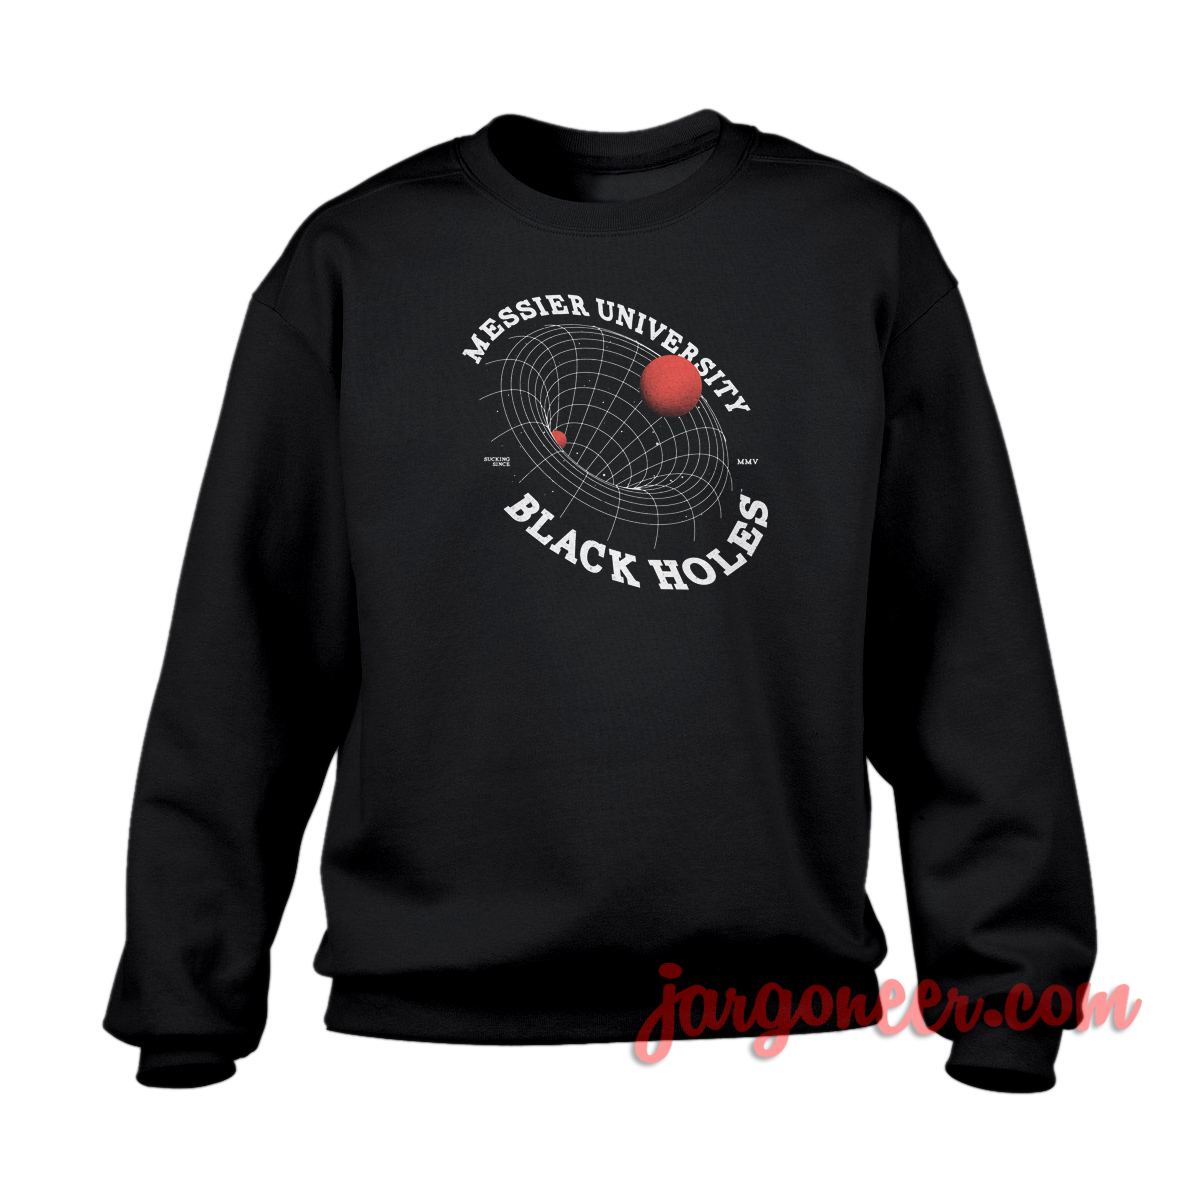 Black Holes Planet - Shop Unique Graphic Cool Shirt Designs